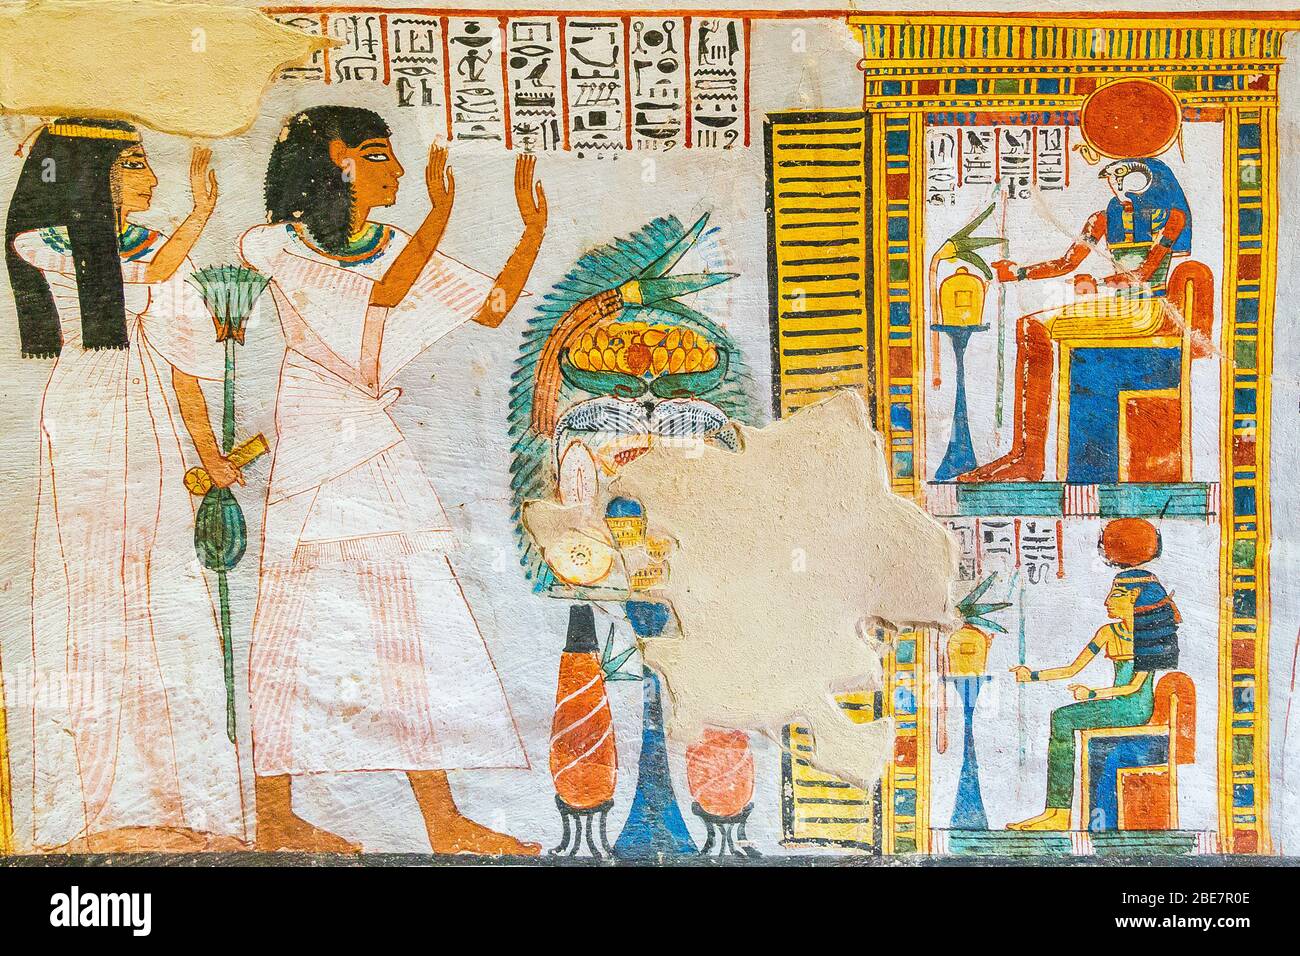 Patrimonio de la Humanidad de la UNESCO, Tebas en Egipto, Valle de los nobles (Dra Abu el Naga), tumba de Roy. Adorando a Ra-Horakhty y Hathor. Foto de stock